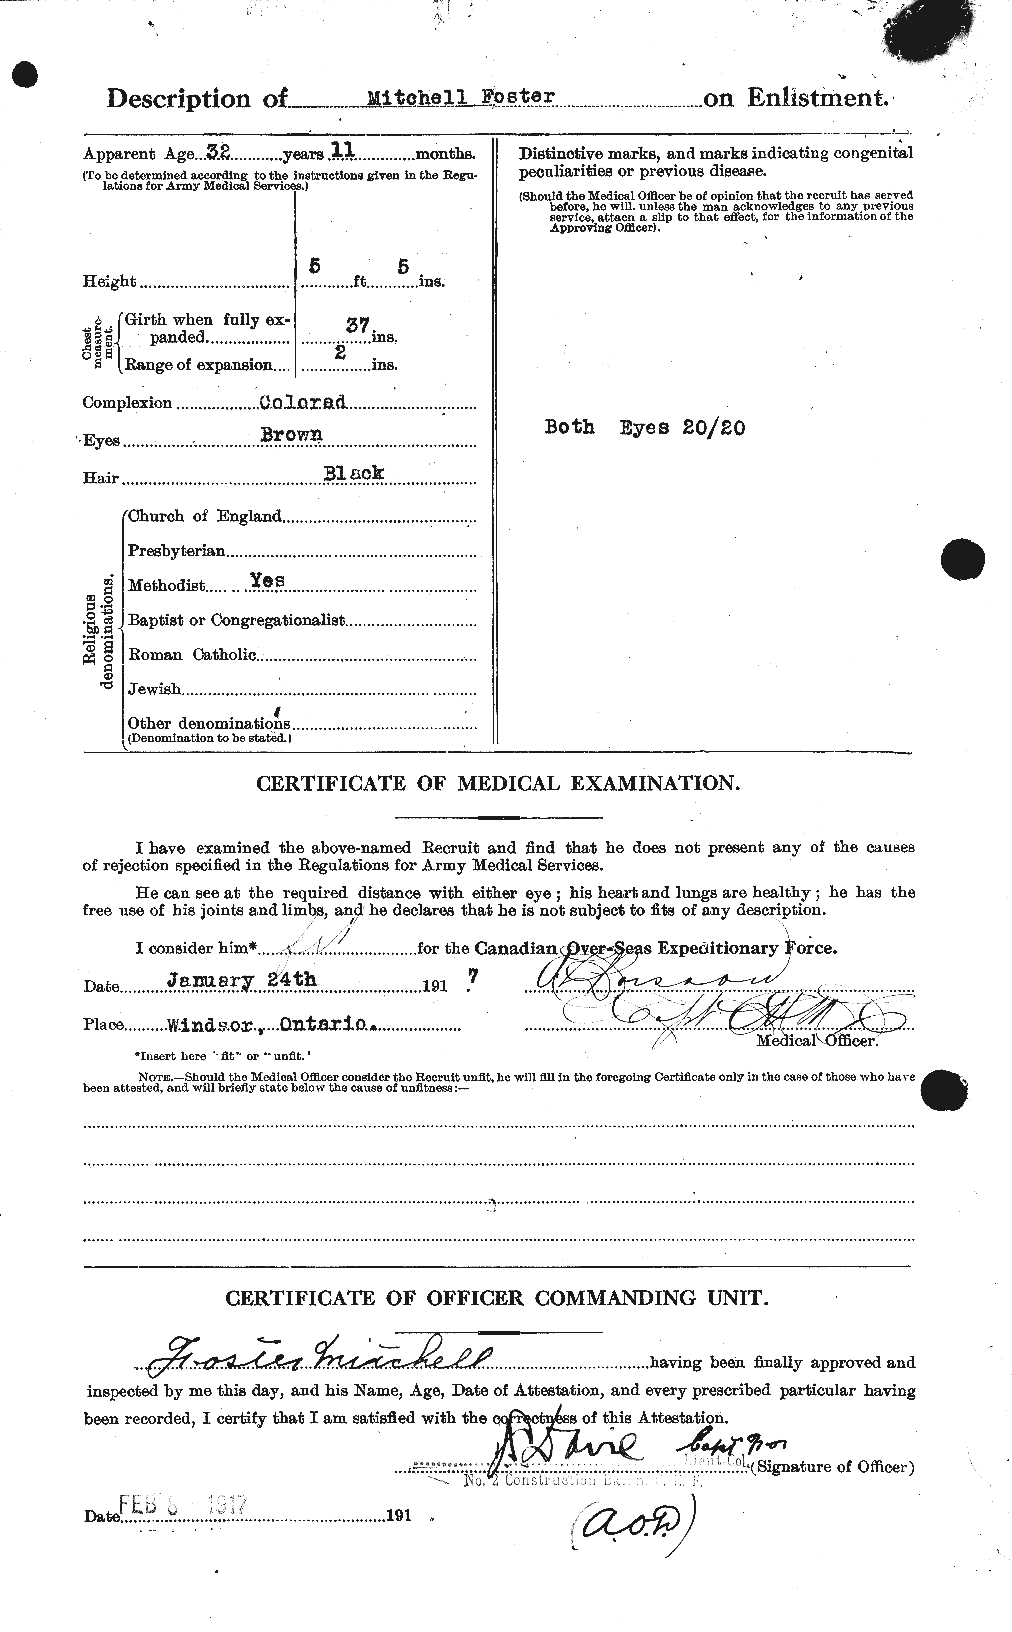 Dossiers du Personnel de la Première Guerre mondiale - CEC 333429b